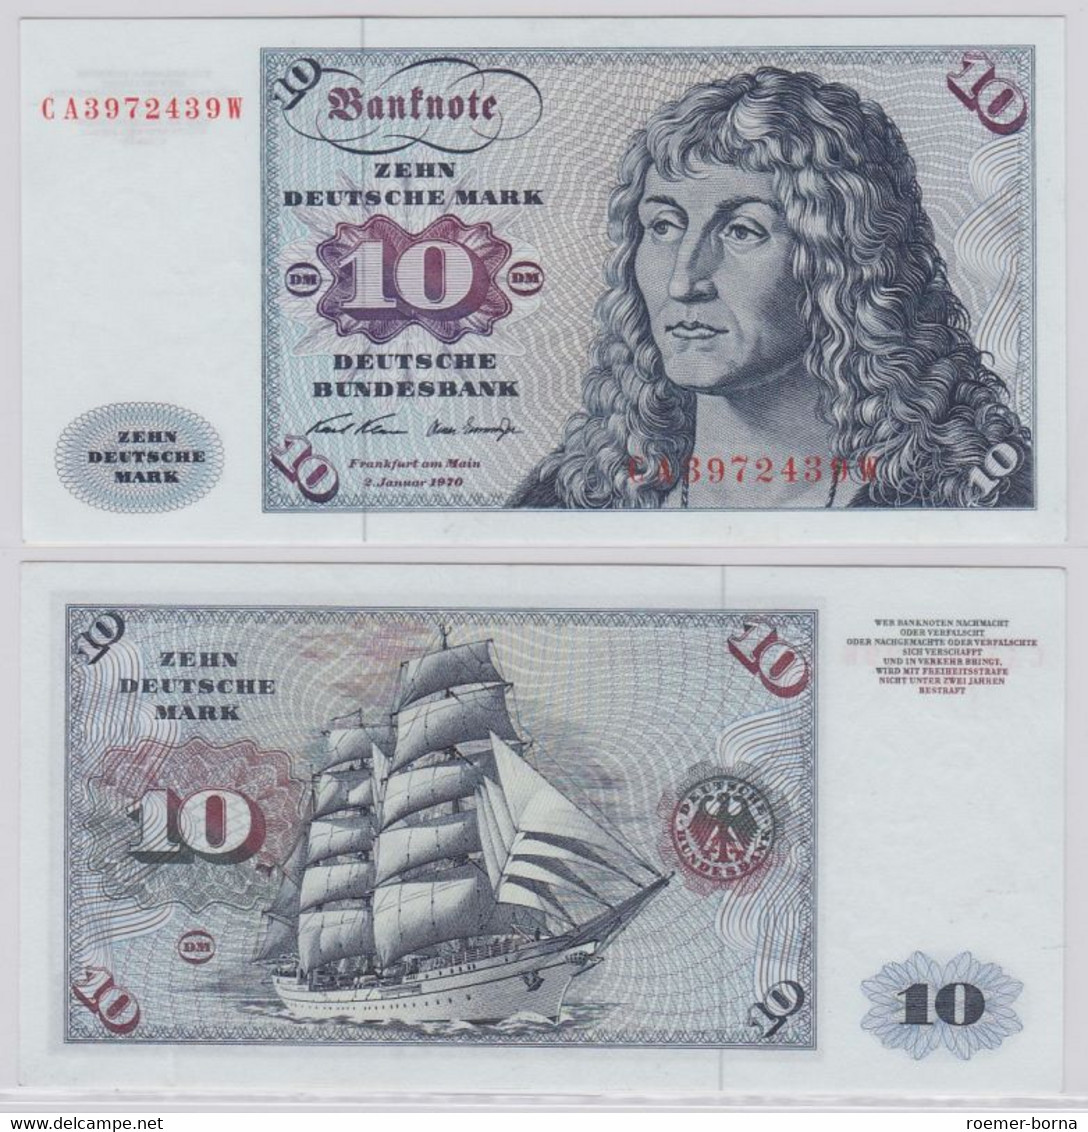 T146190 Banknote 10 DM Deutsche Mark Ro. 270a Schein 2.Jan. 1970 KN CA 3972439 W - 10 DM